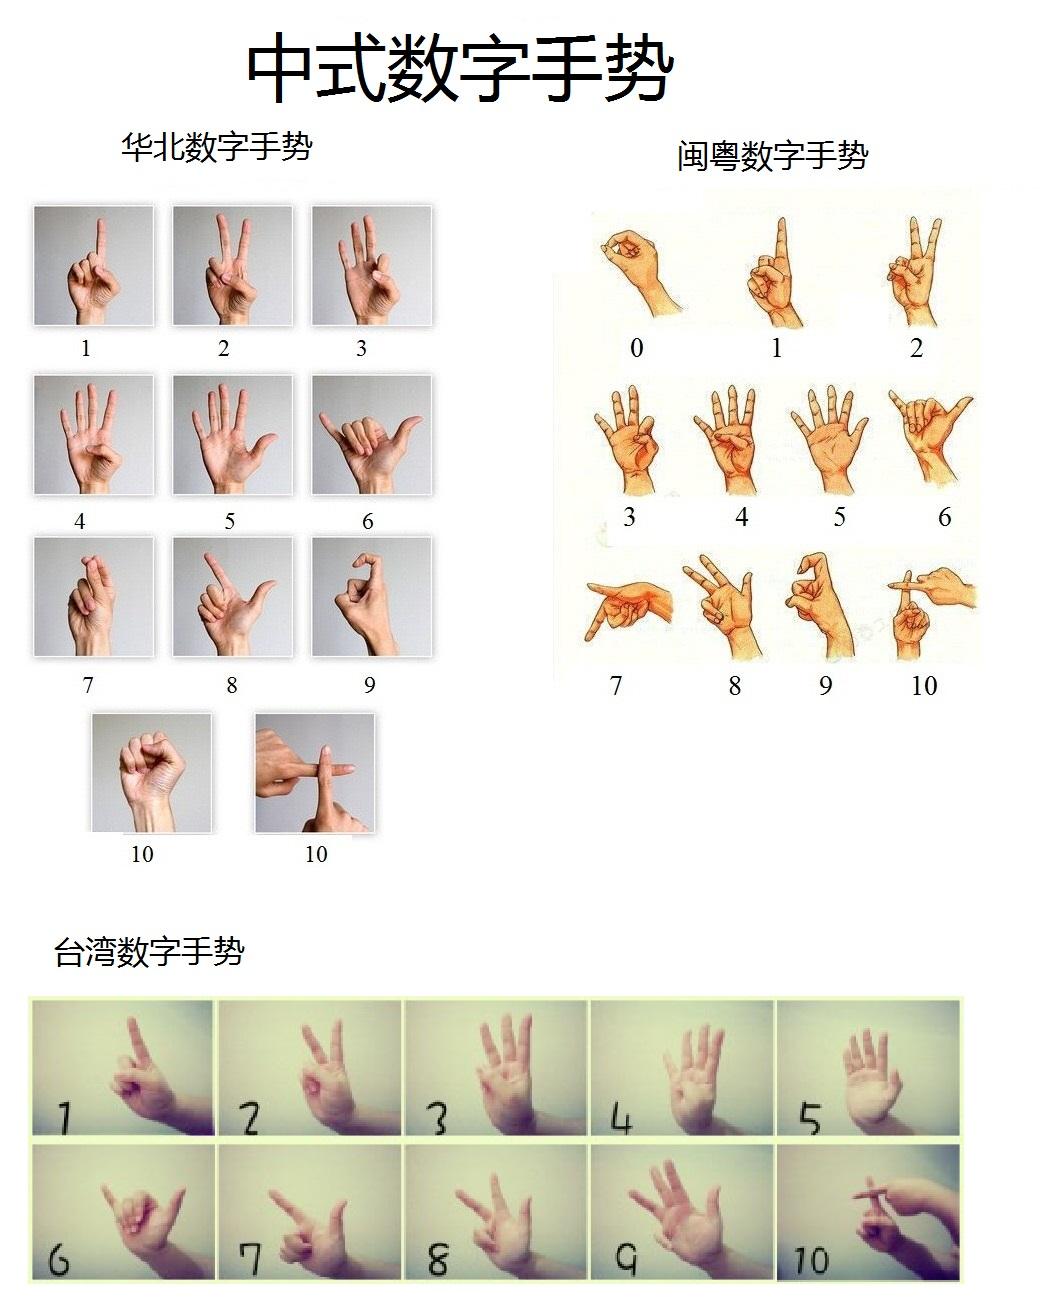 数字七的手势图片